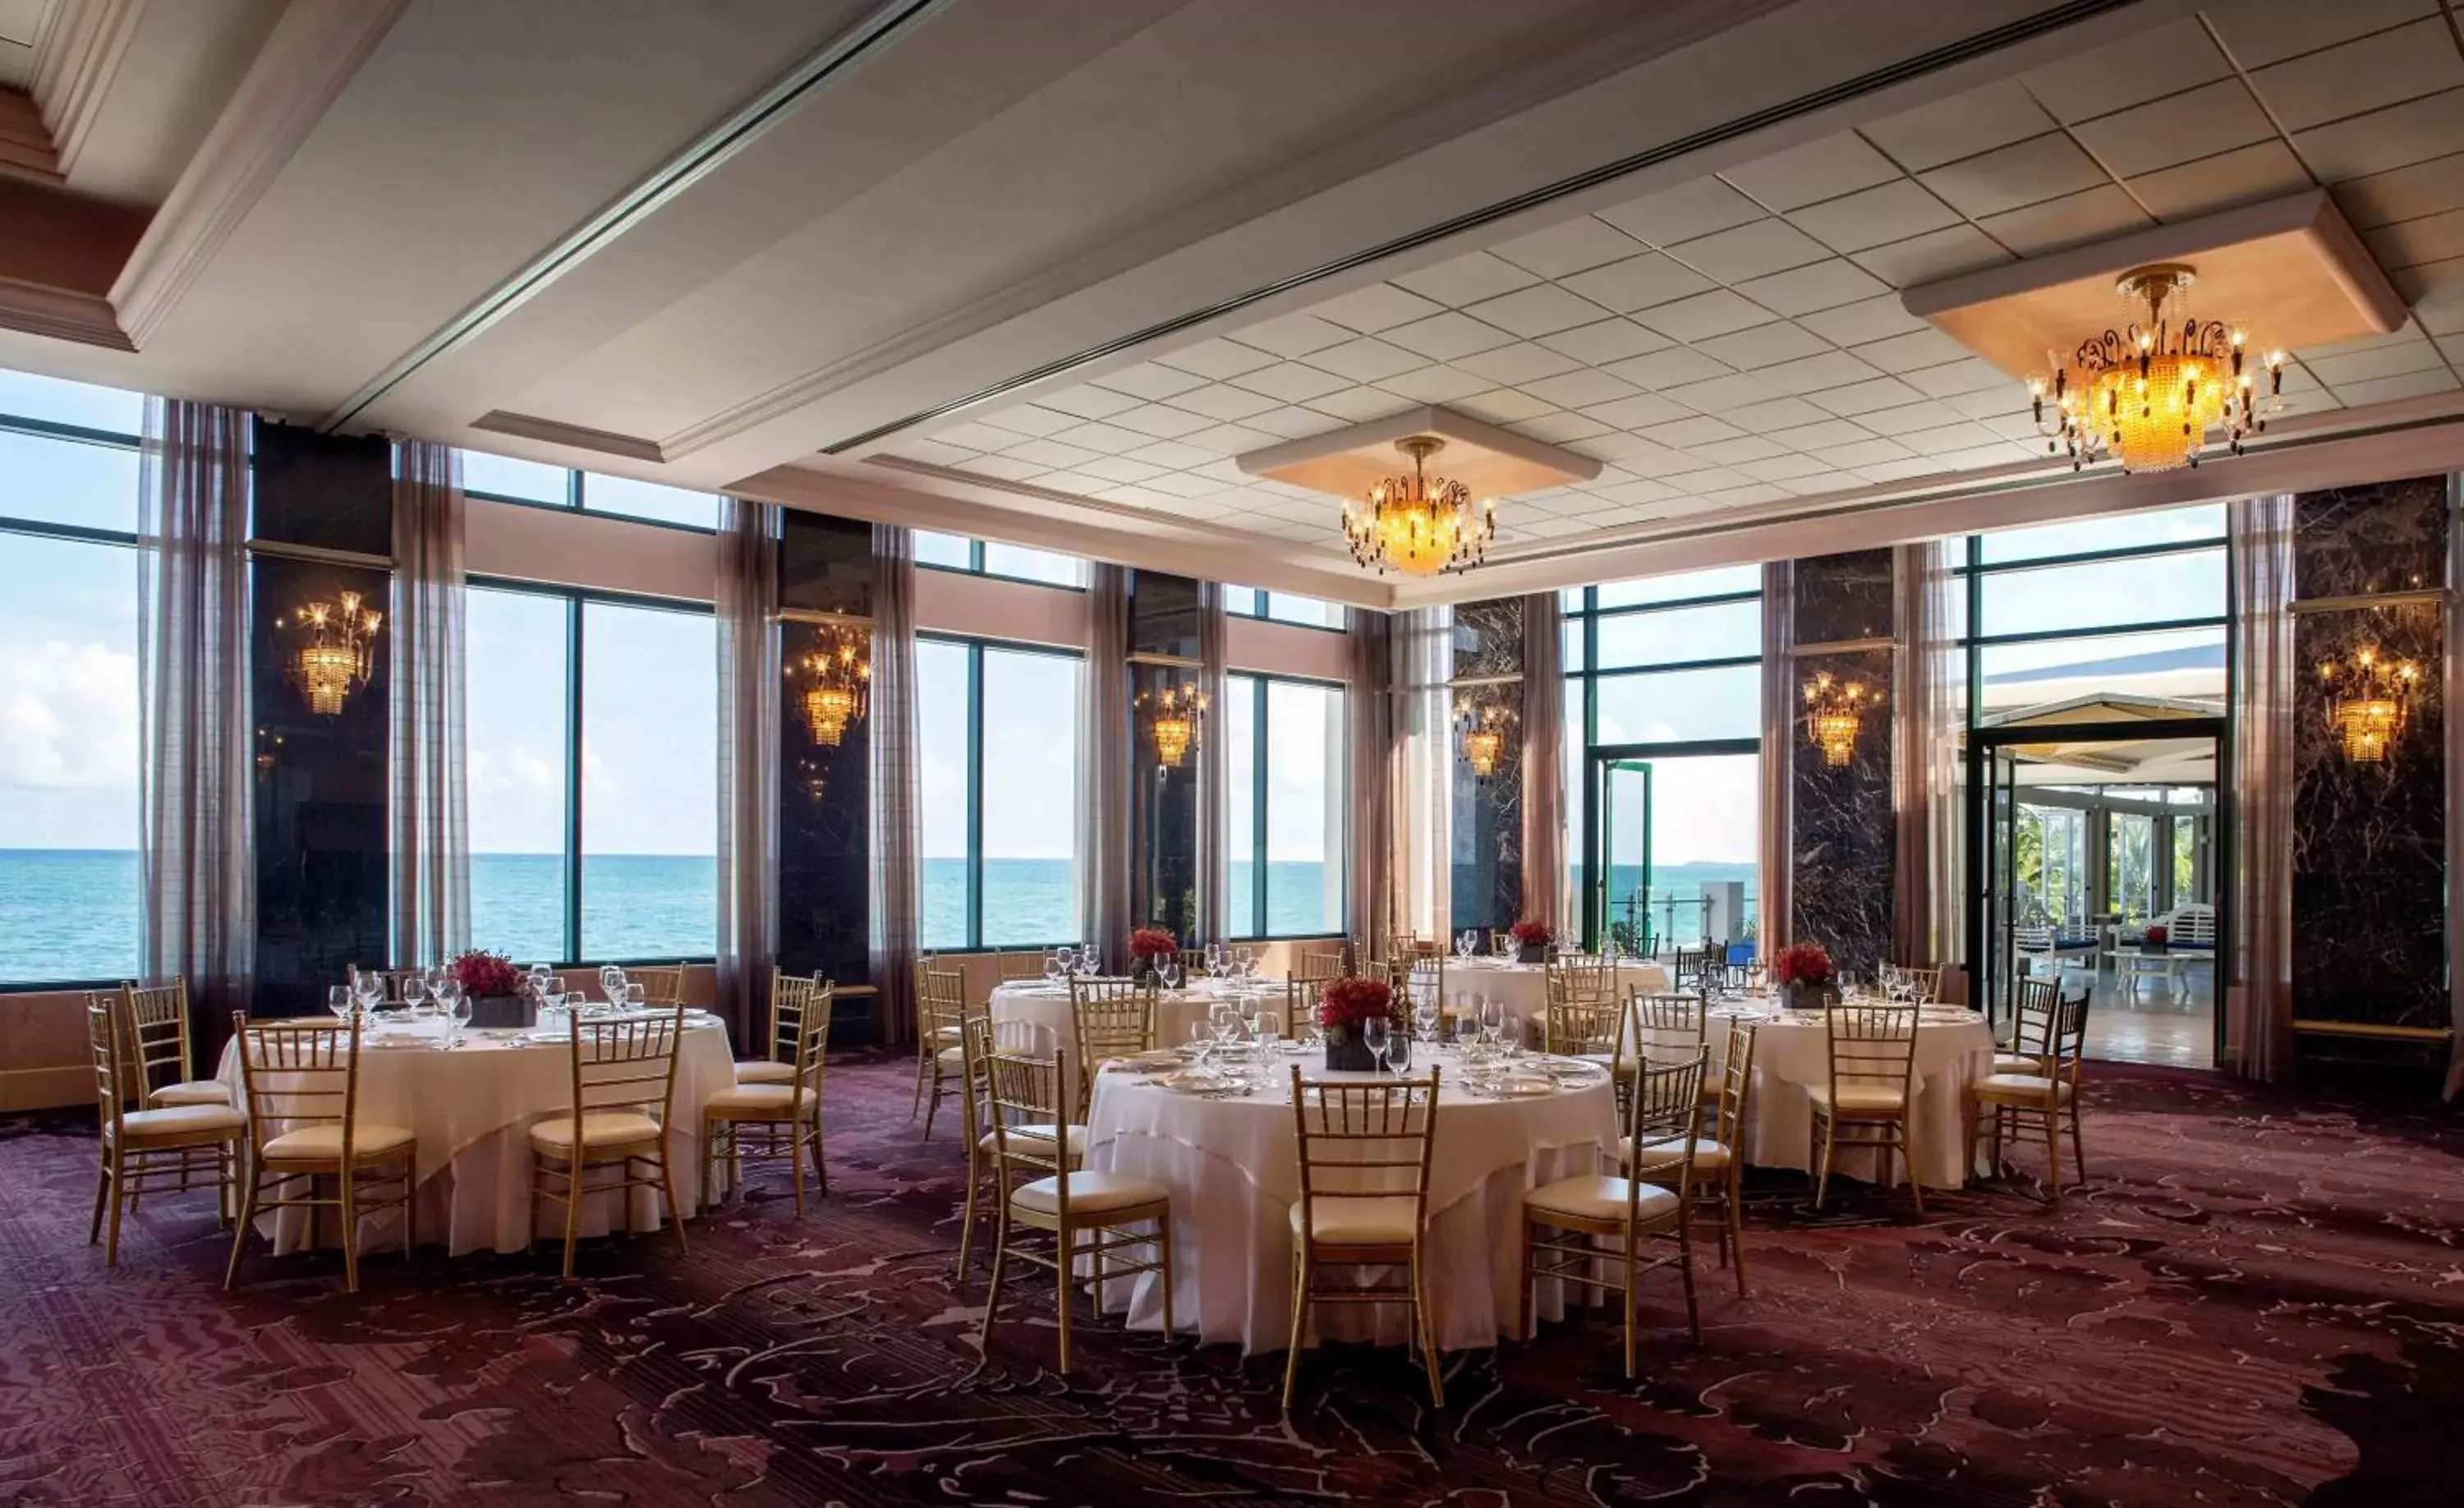 Banquet/Function facilities, Restaurant/Places to Eat in Condado Vanderbilt Hotel